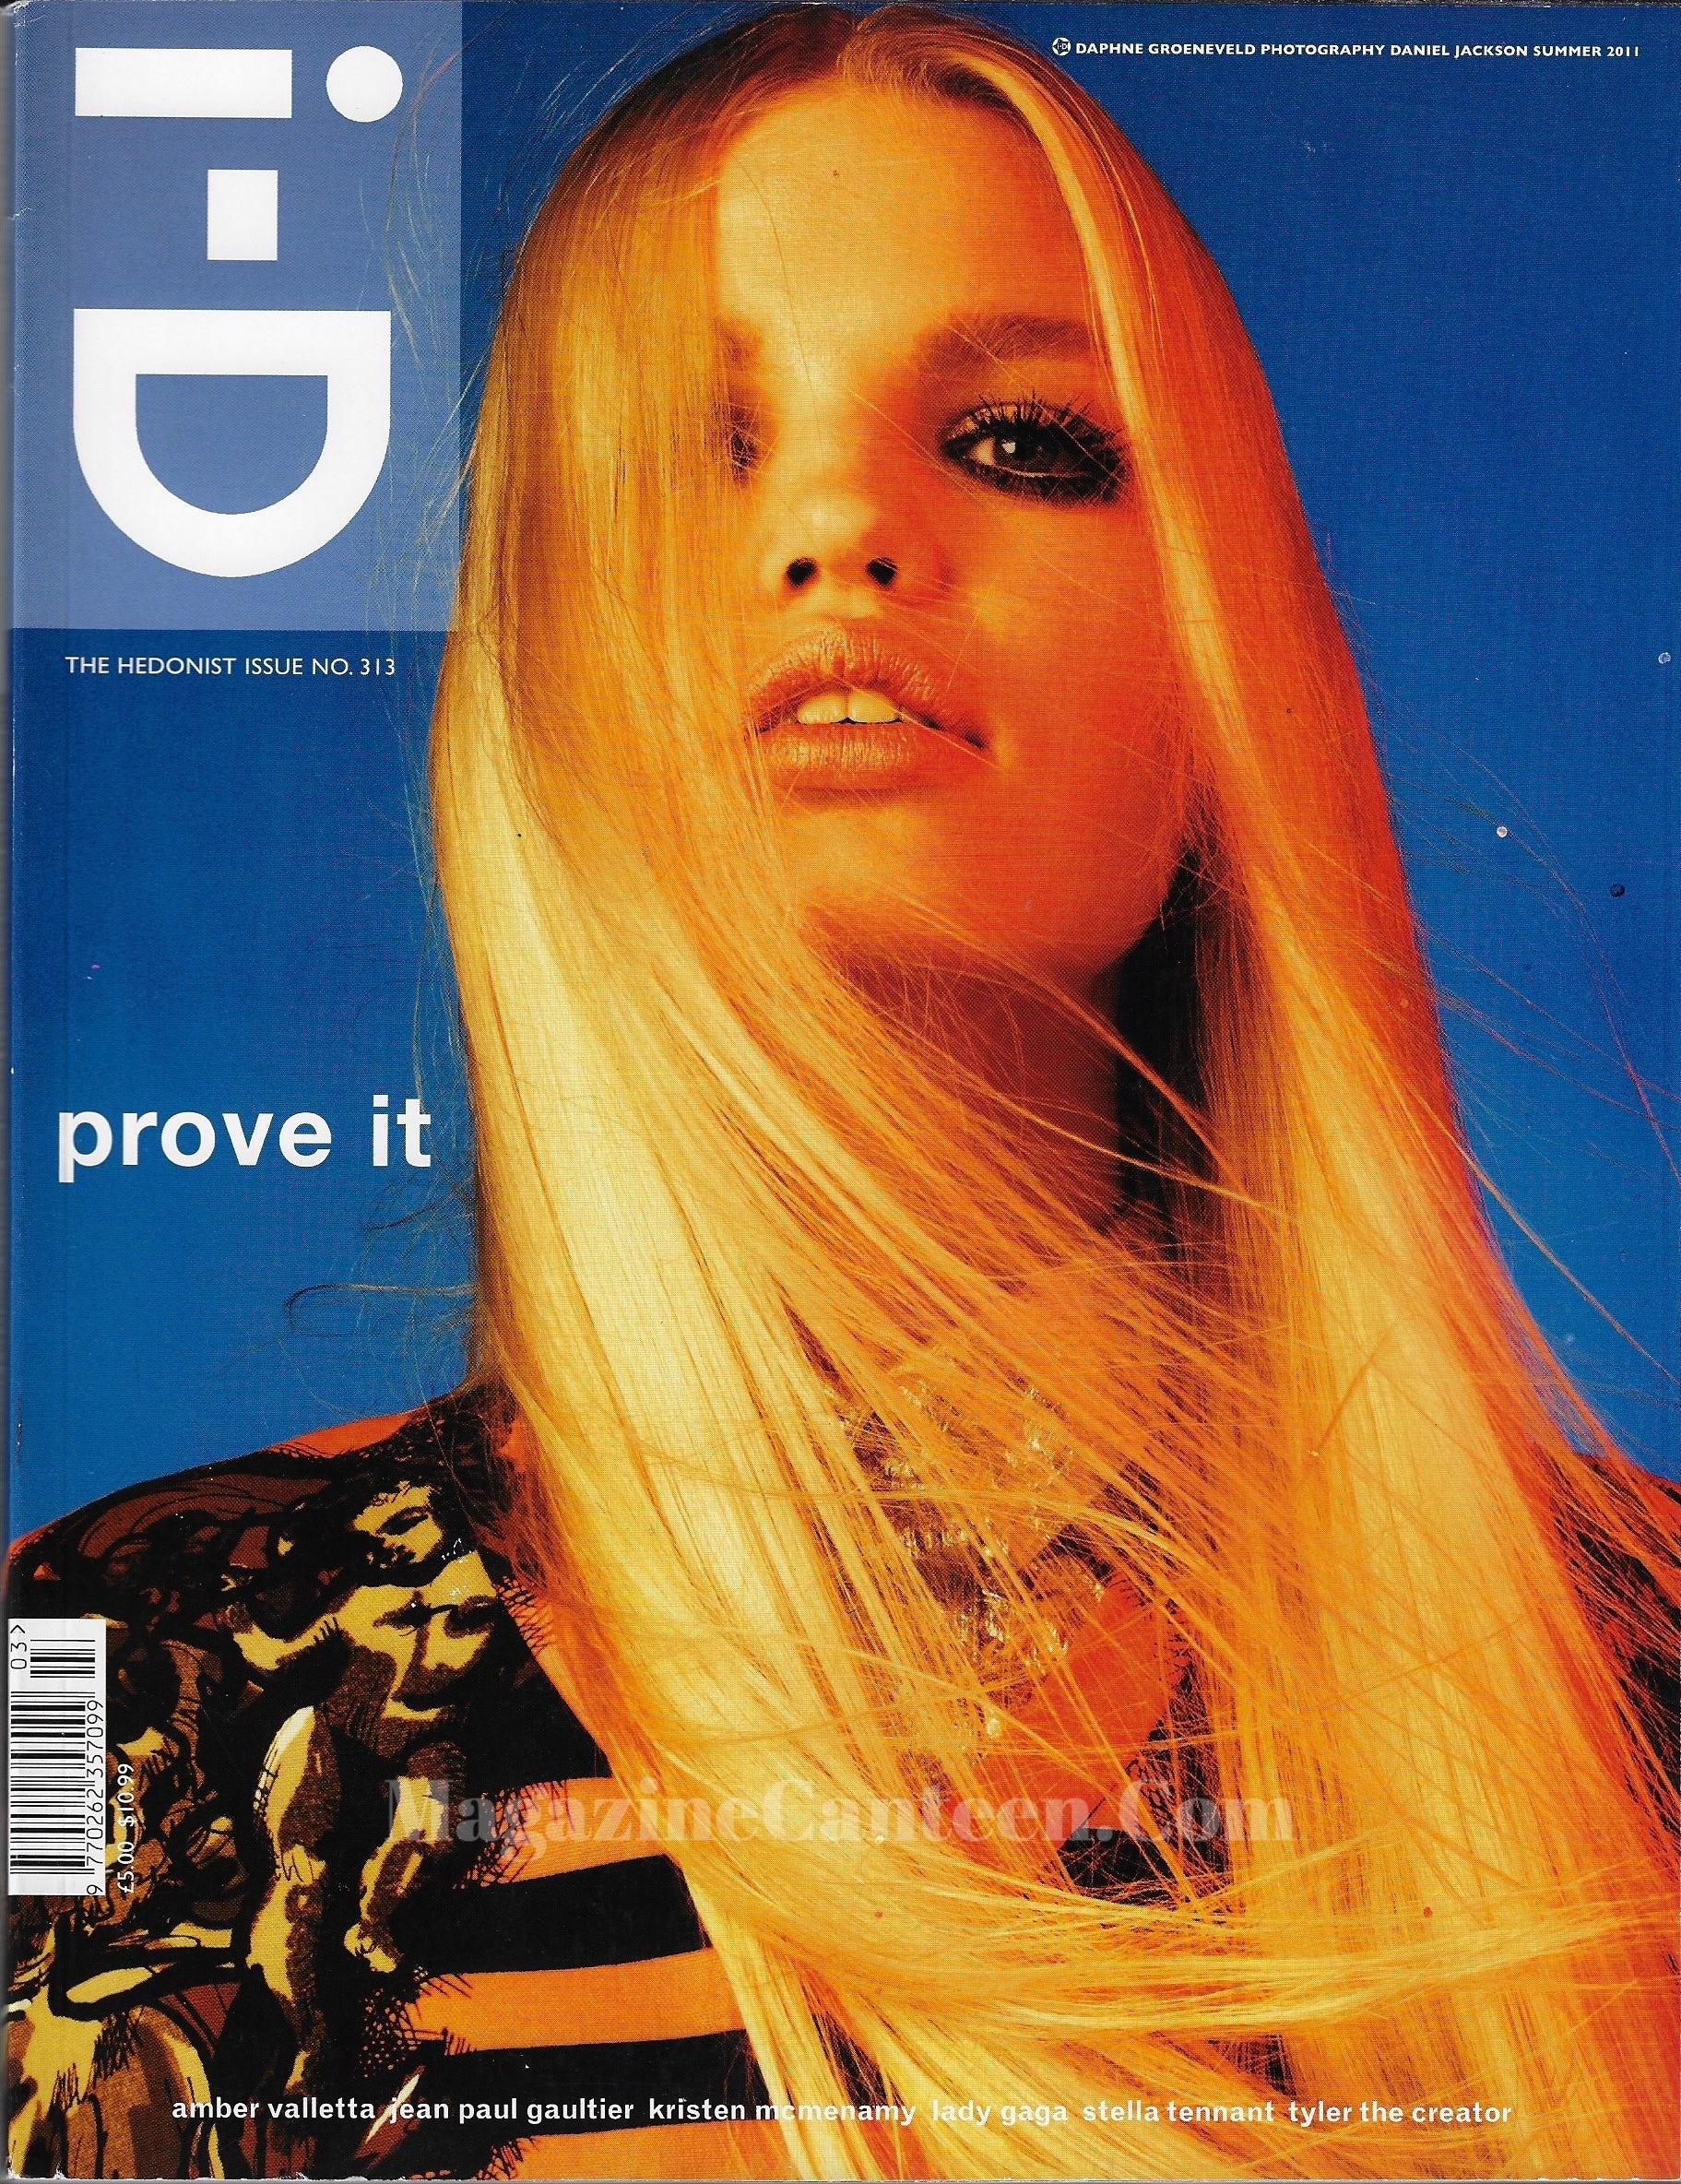 I-D Magazine 313 - Daphne Groeneveld 2011